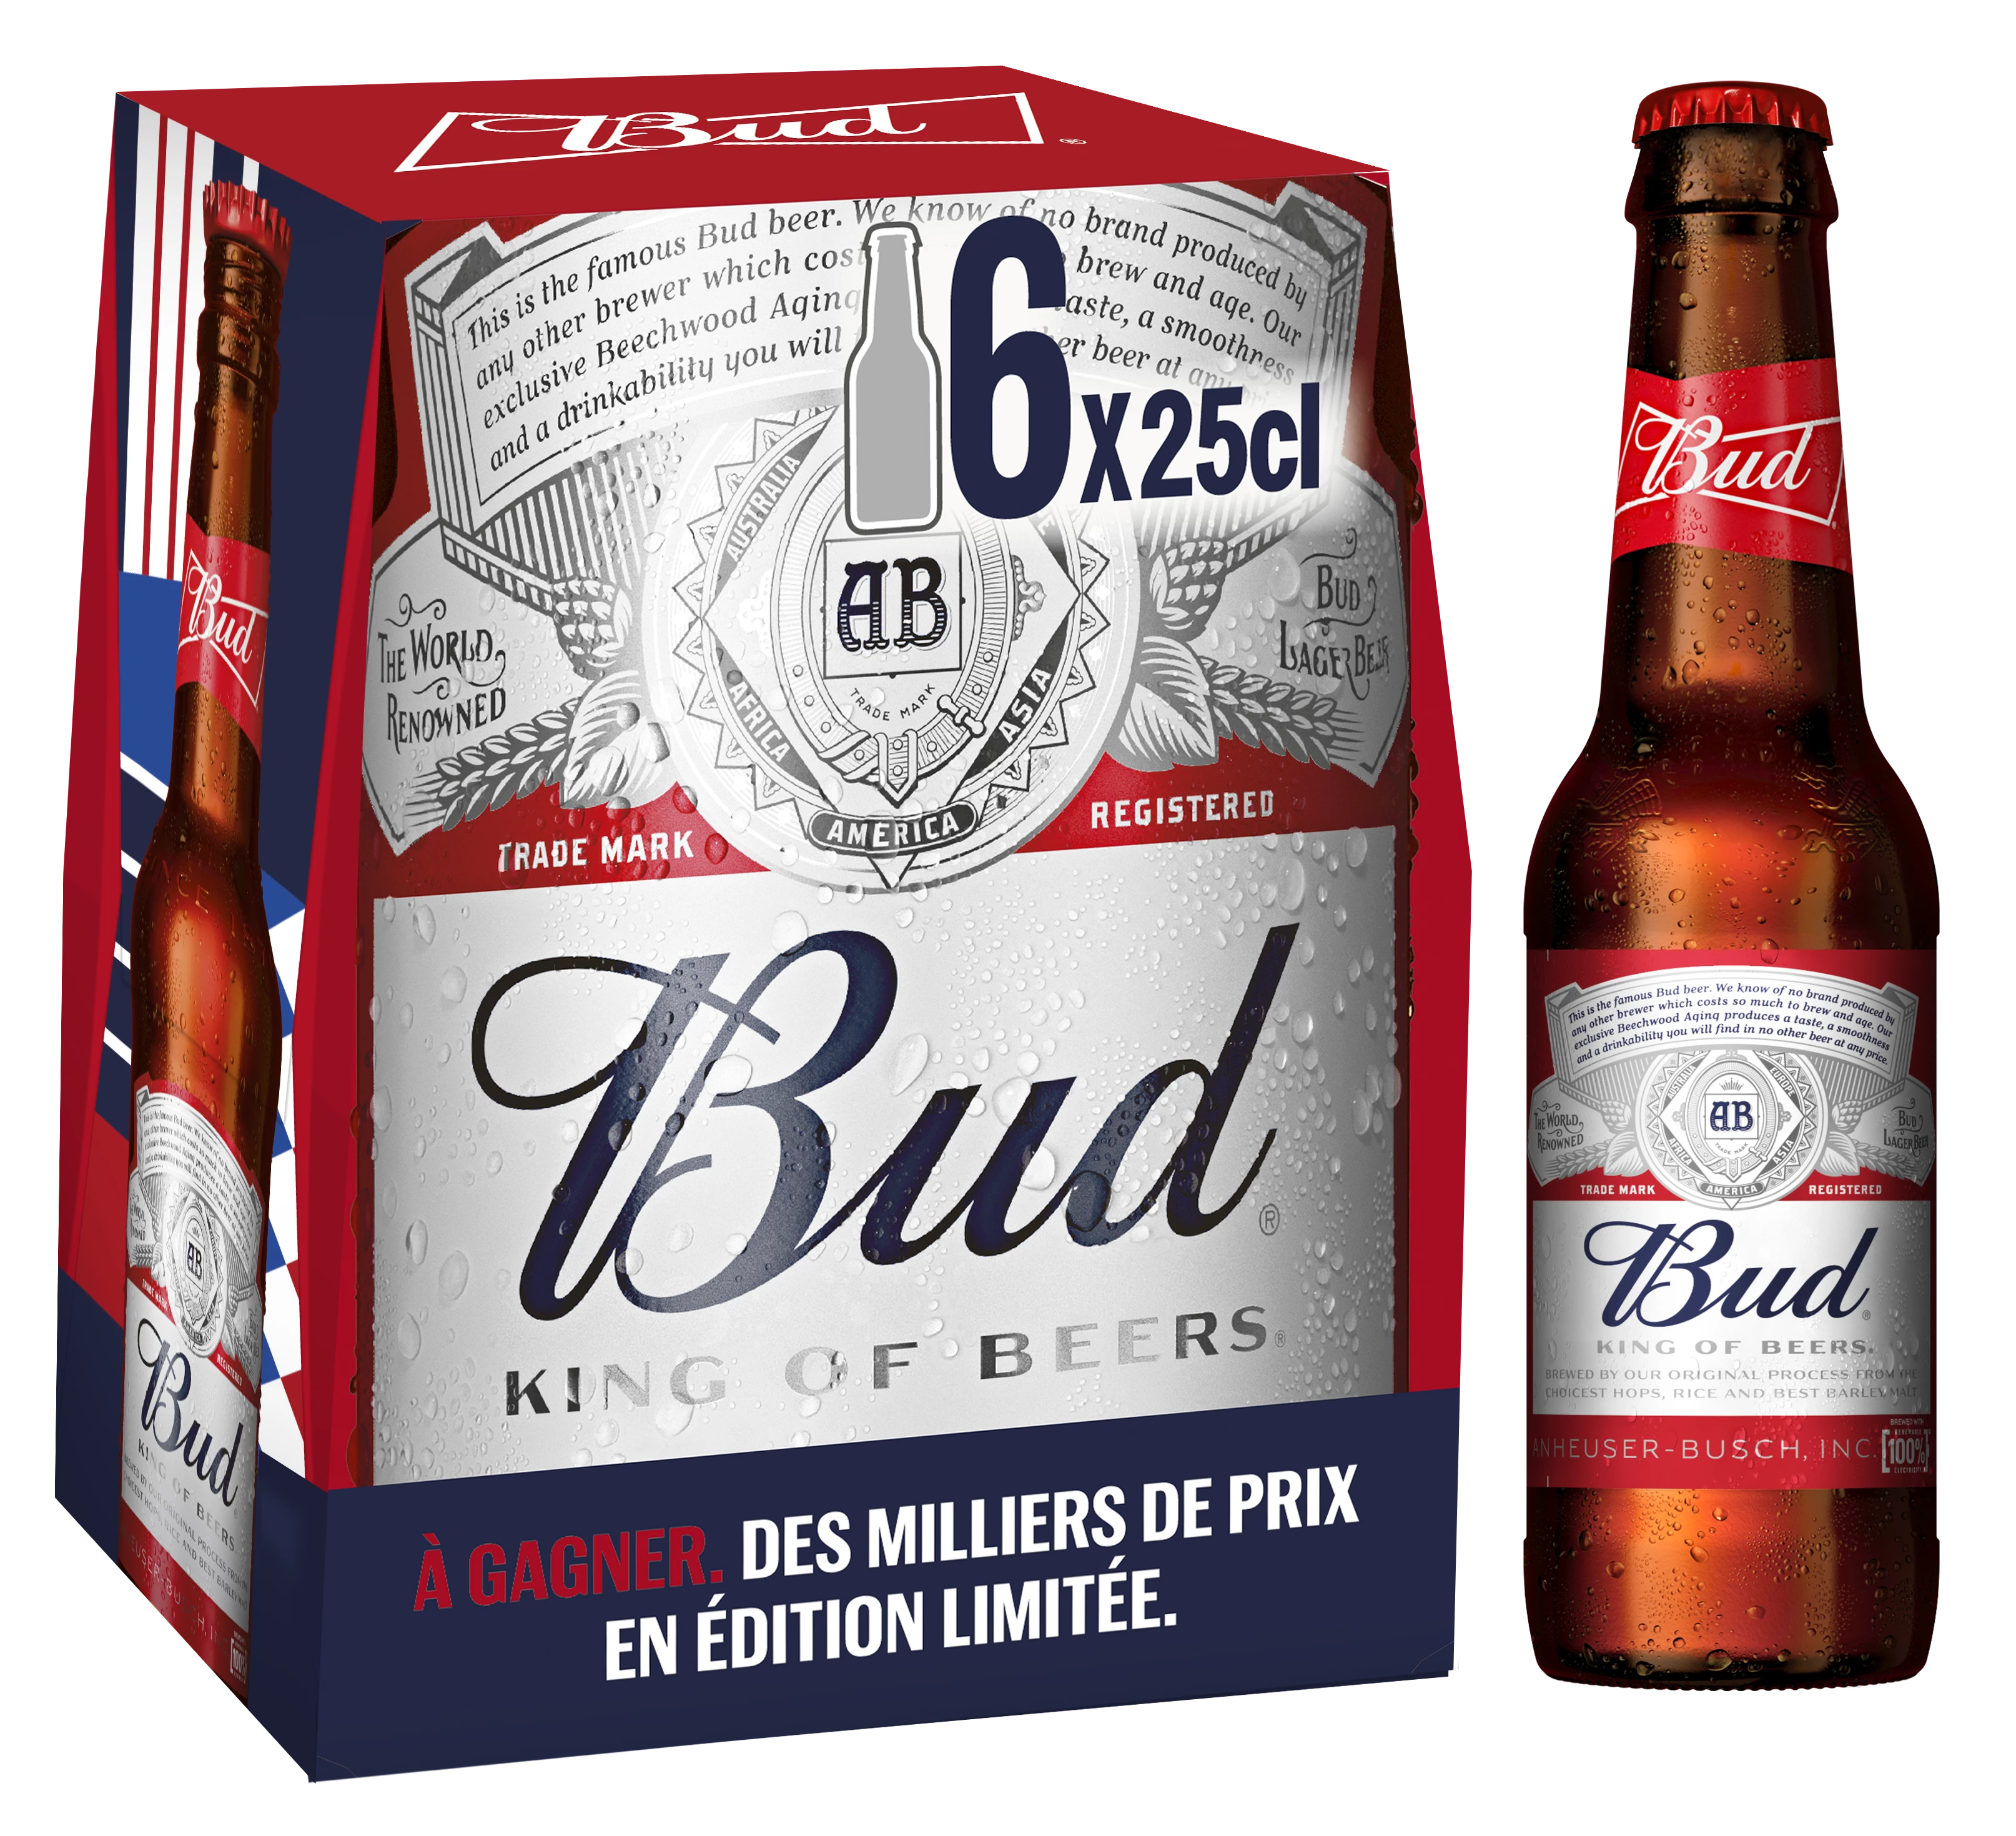 Blonde beer, 6x25cl - BUD